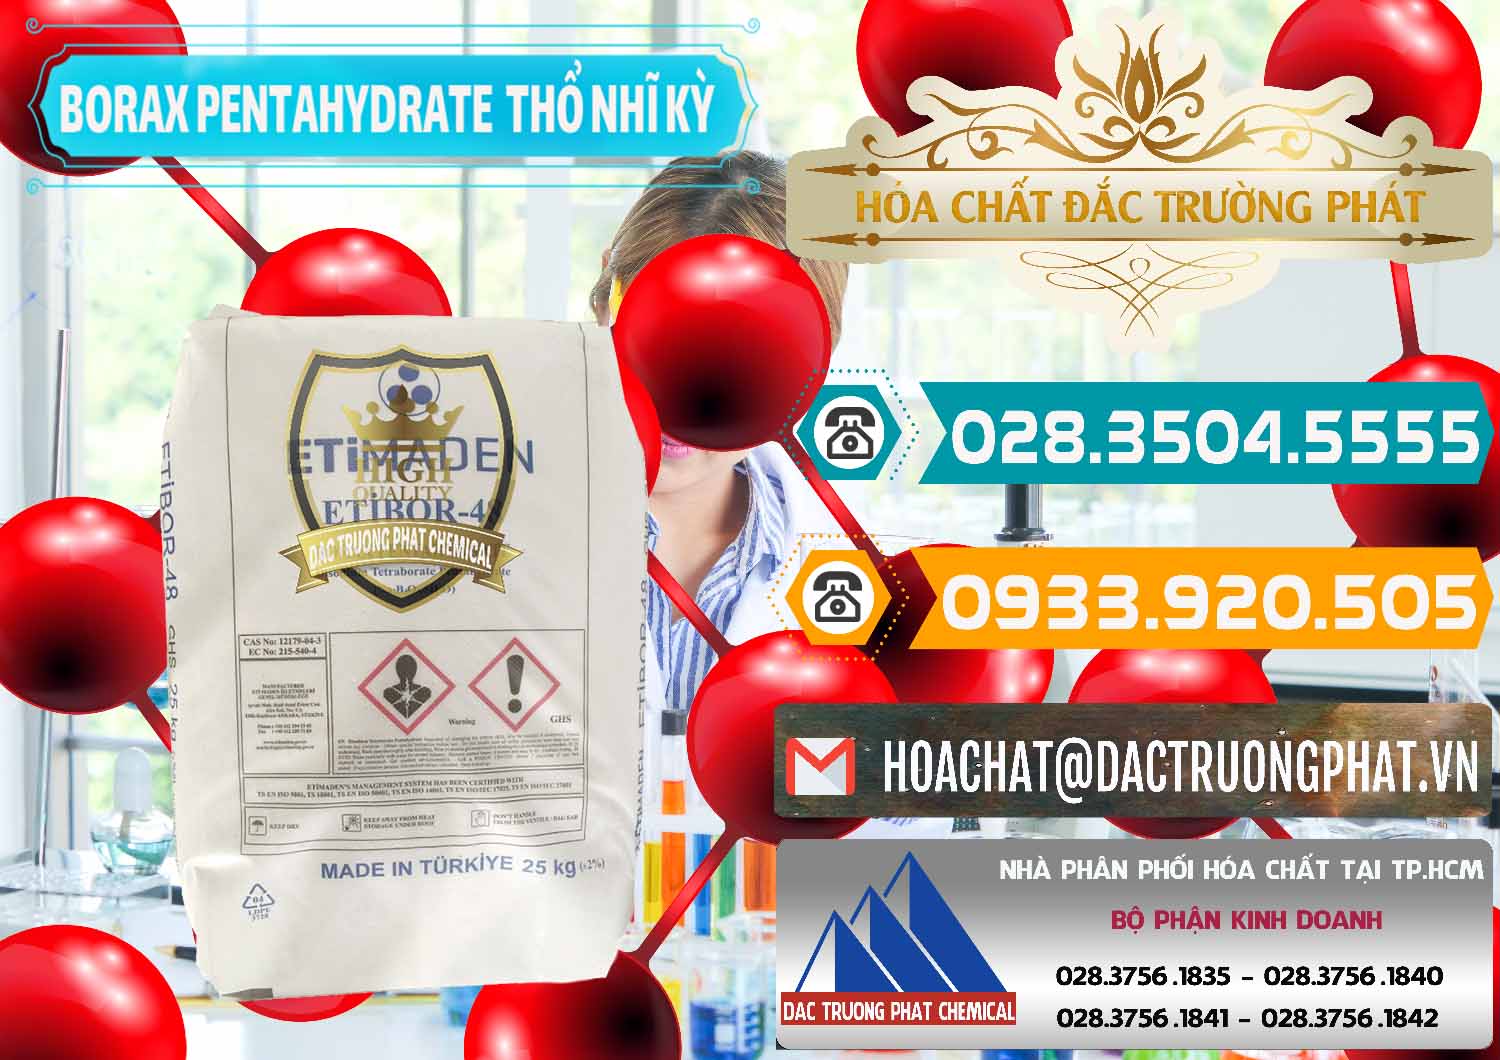 Cty kinh doanh ( bán ) Borax Pentahydrate Thổ Nhĩ Kỳ Turkey - 0431 - Cty chuyên phân phối và nhập khẩu hóa chất tại TP.HCM - congtyhoachat.vn